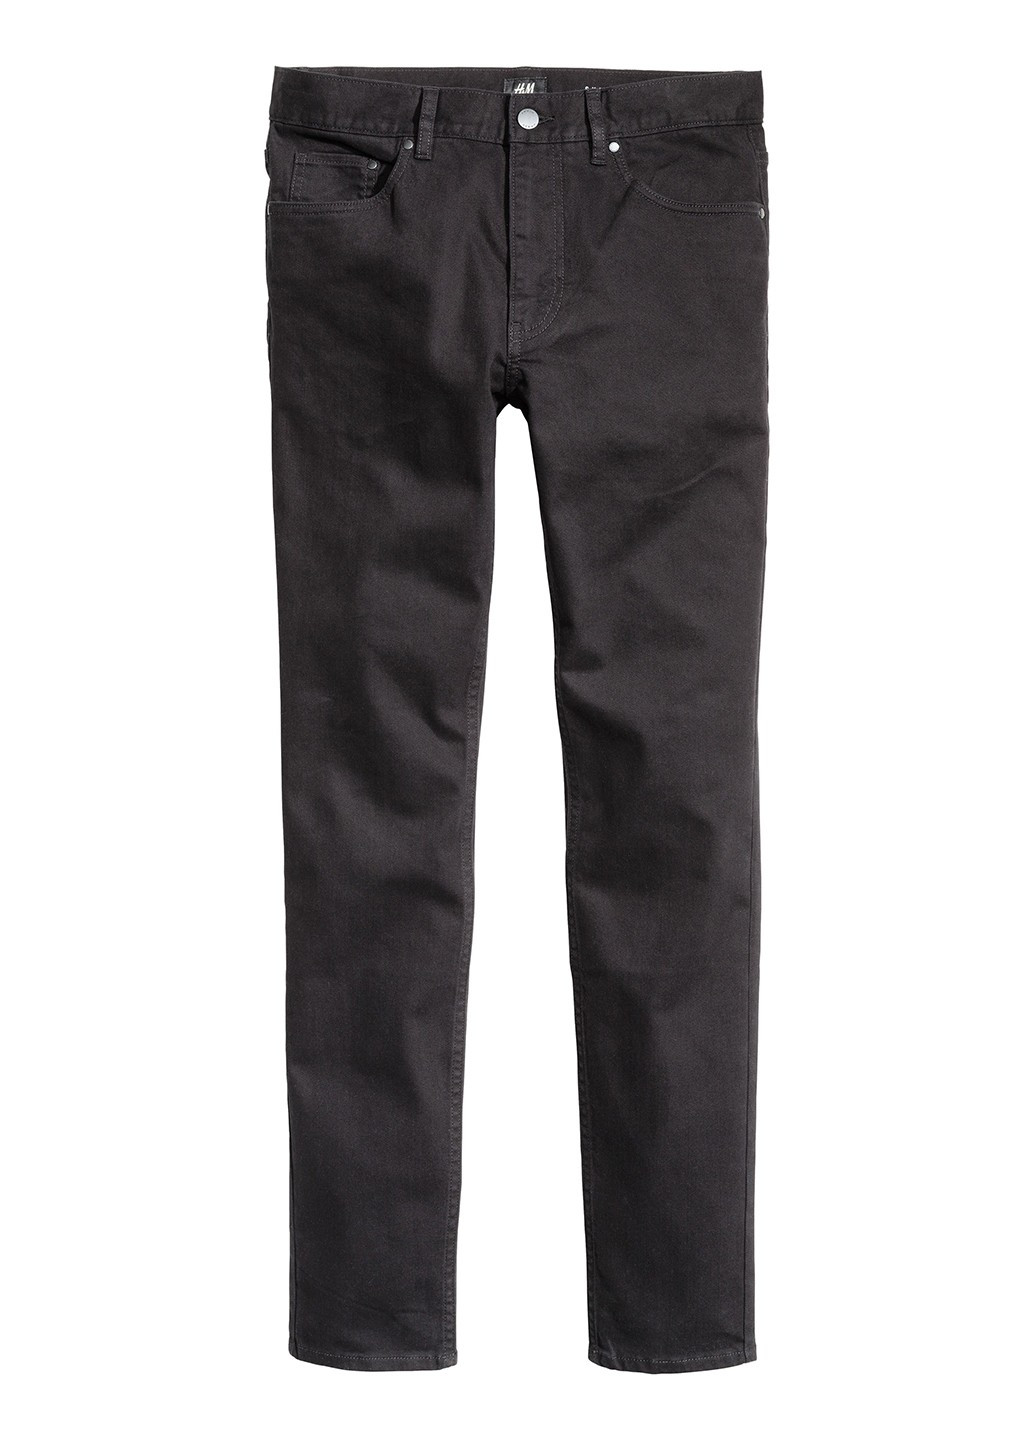 Черные джинсовые демисезонные зауженные брюки H&M